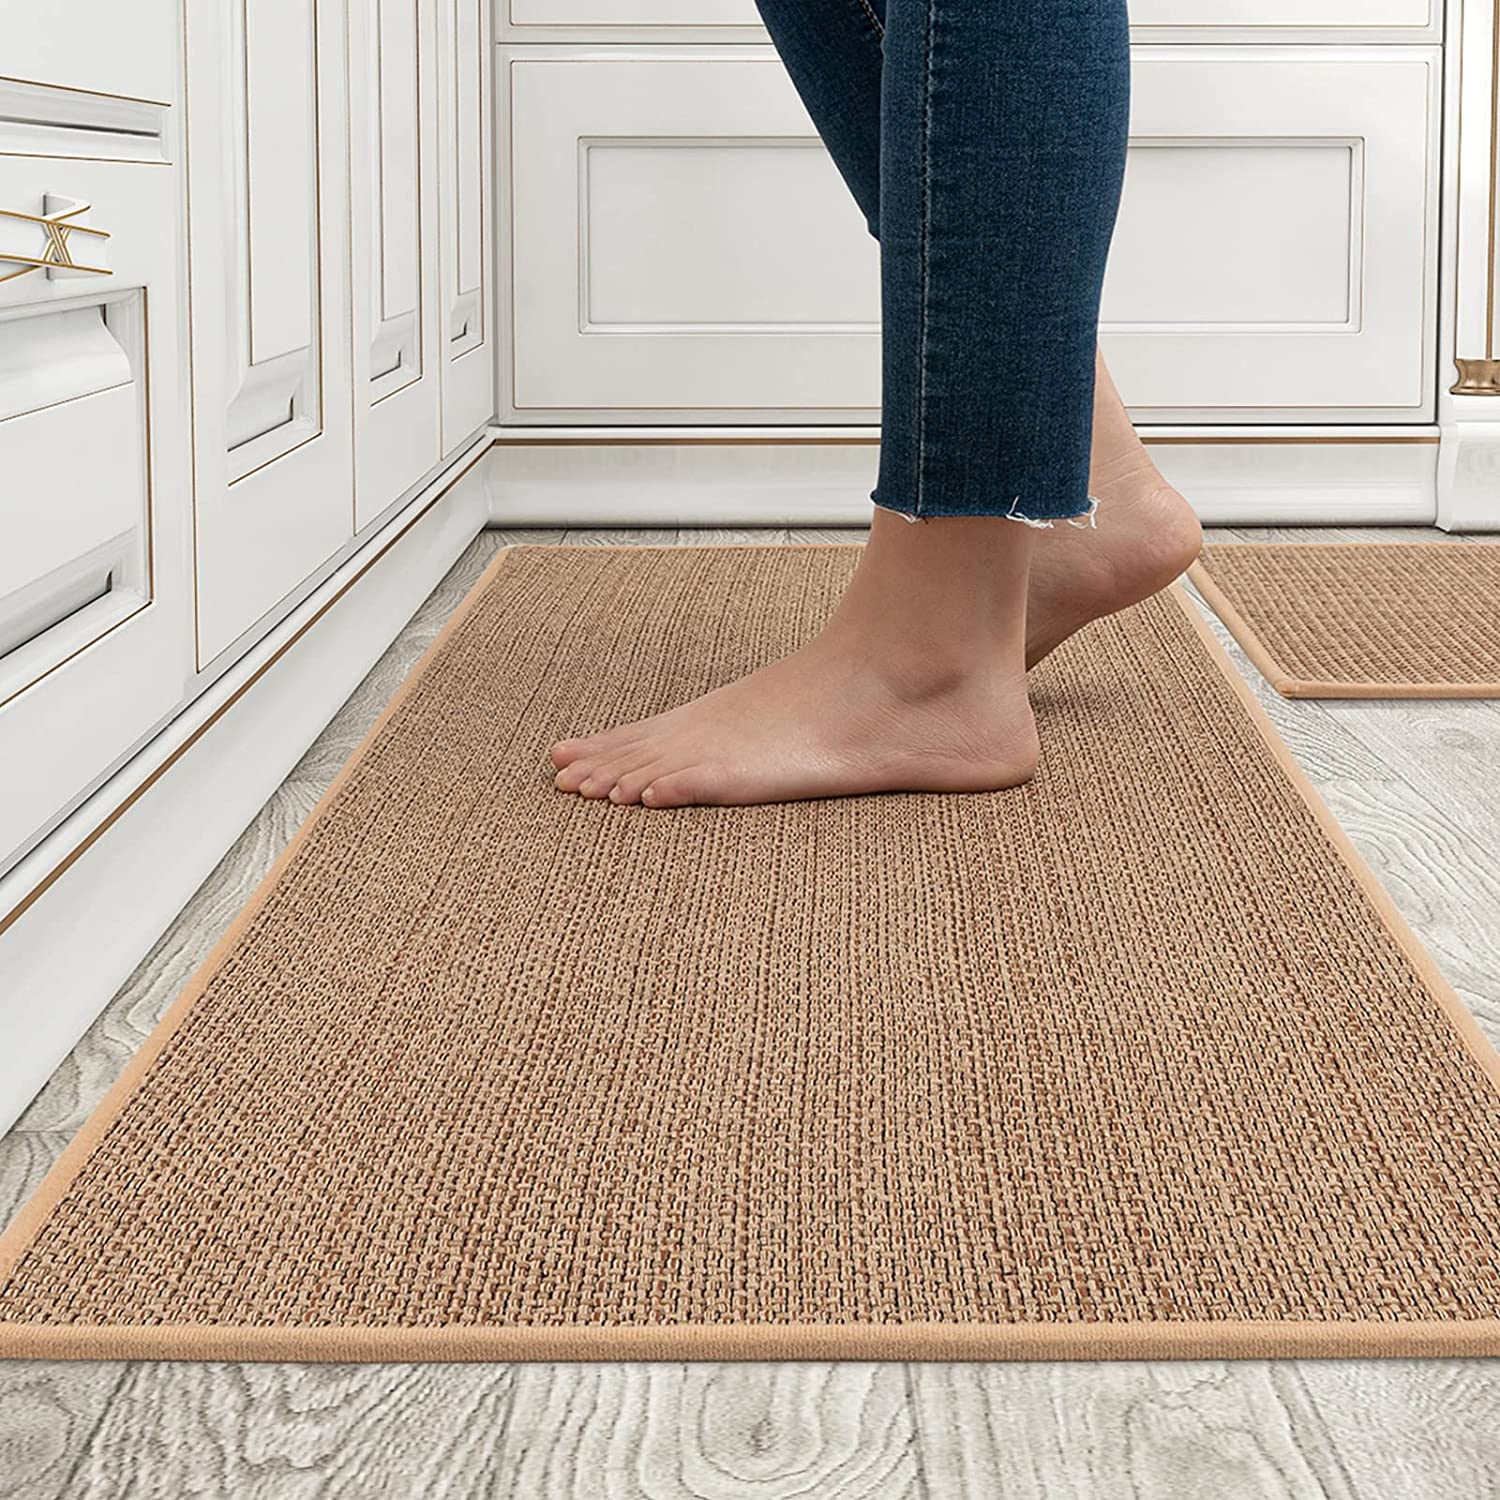 Montvoo kitchen floor mat